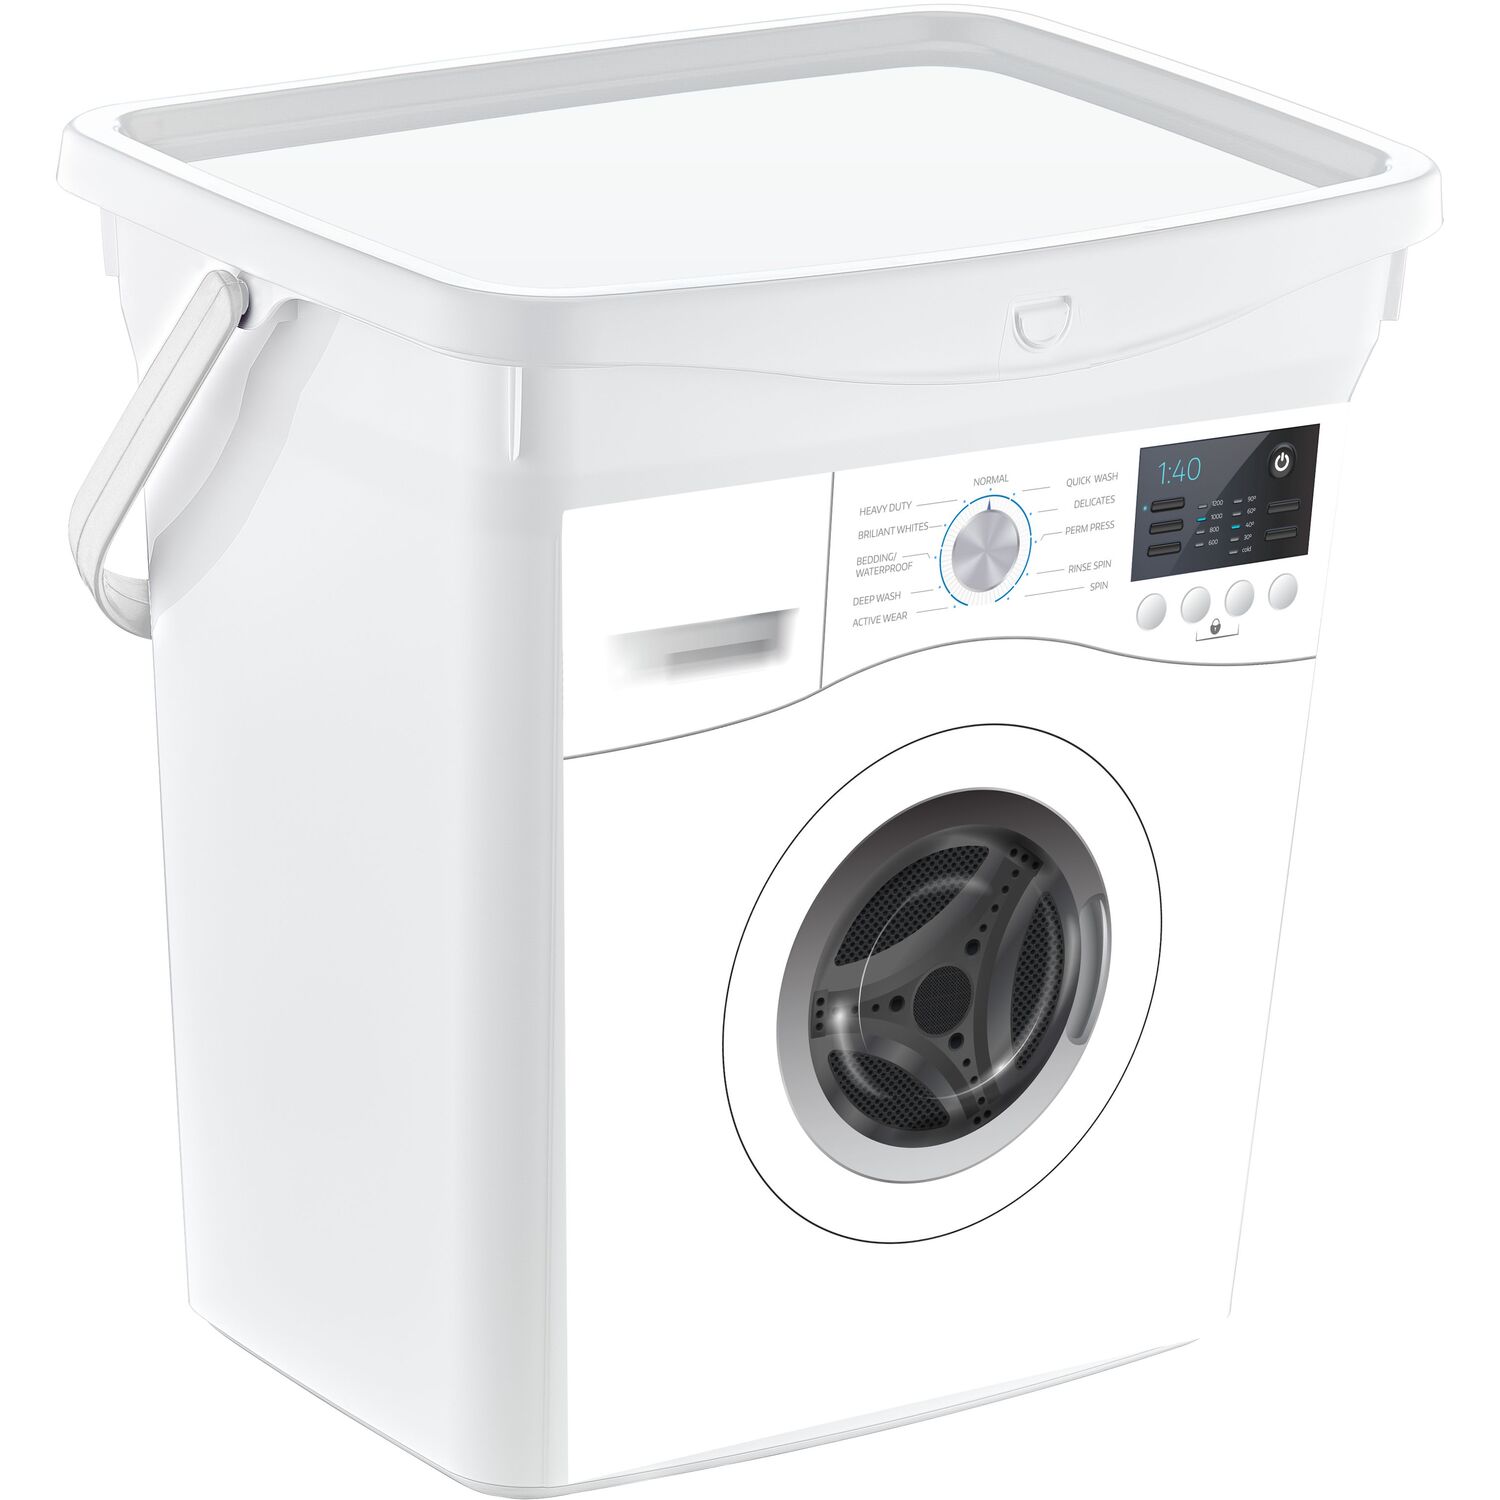 Q Box Detergent Box 6L - White Image